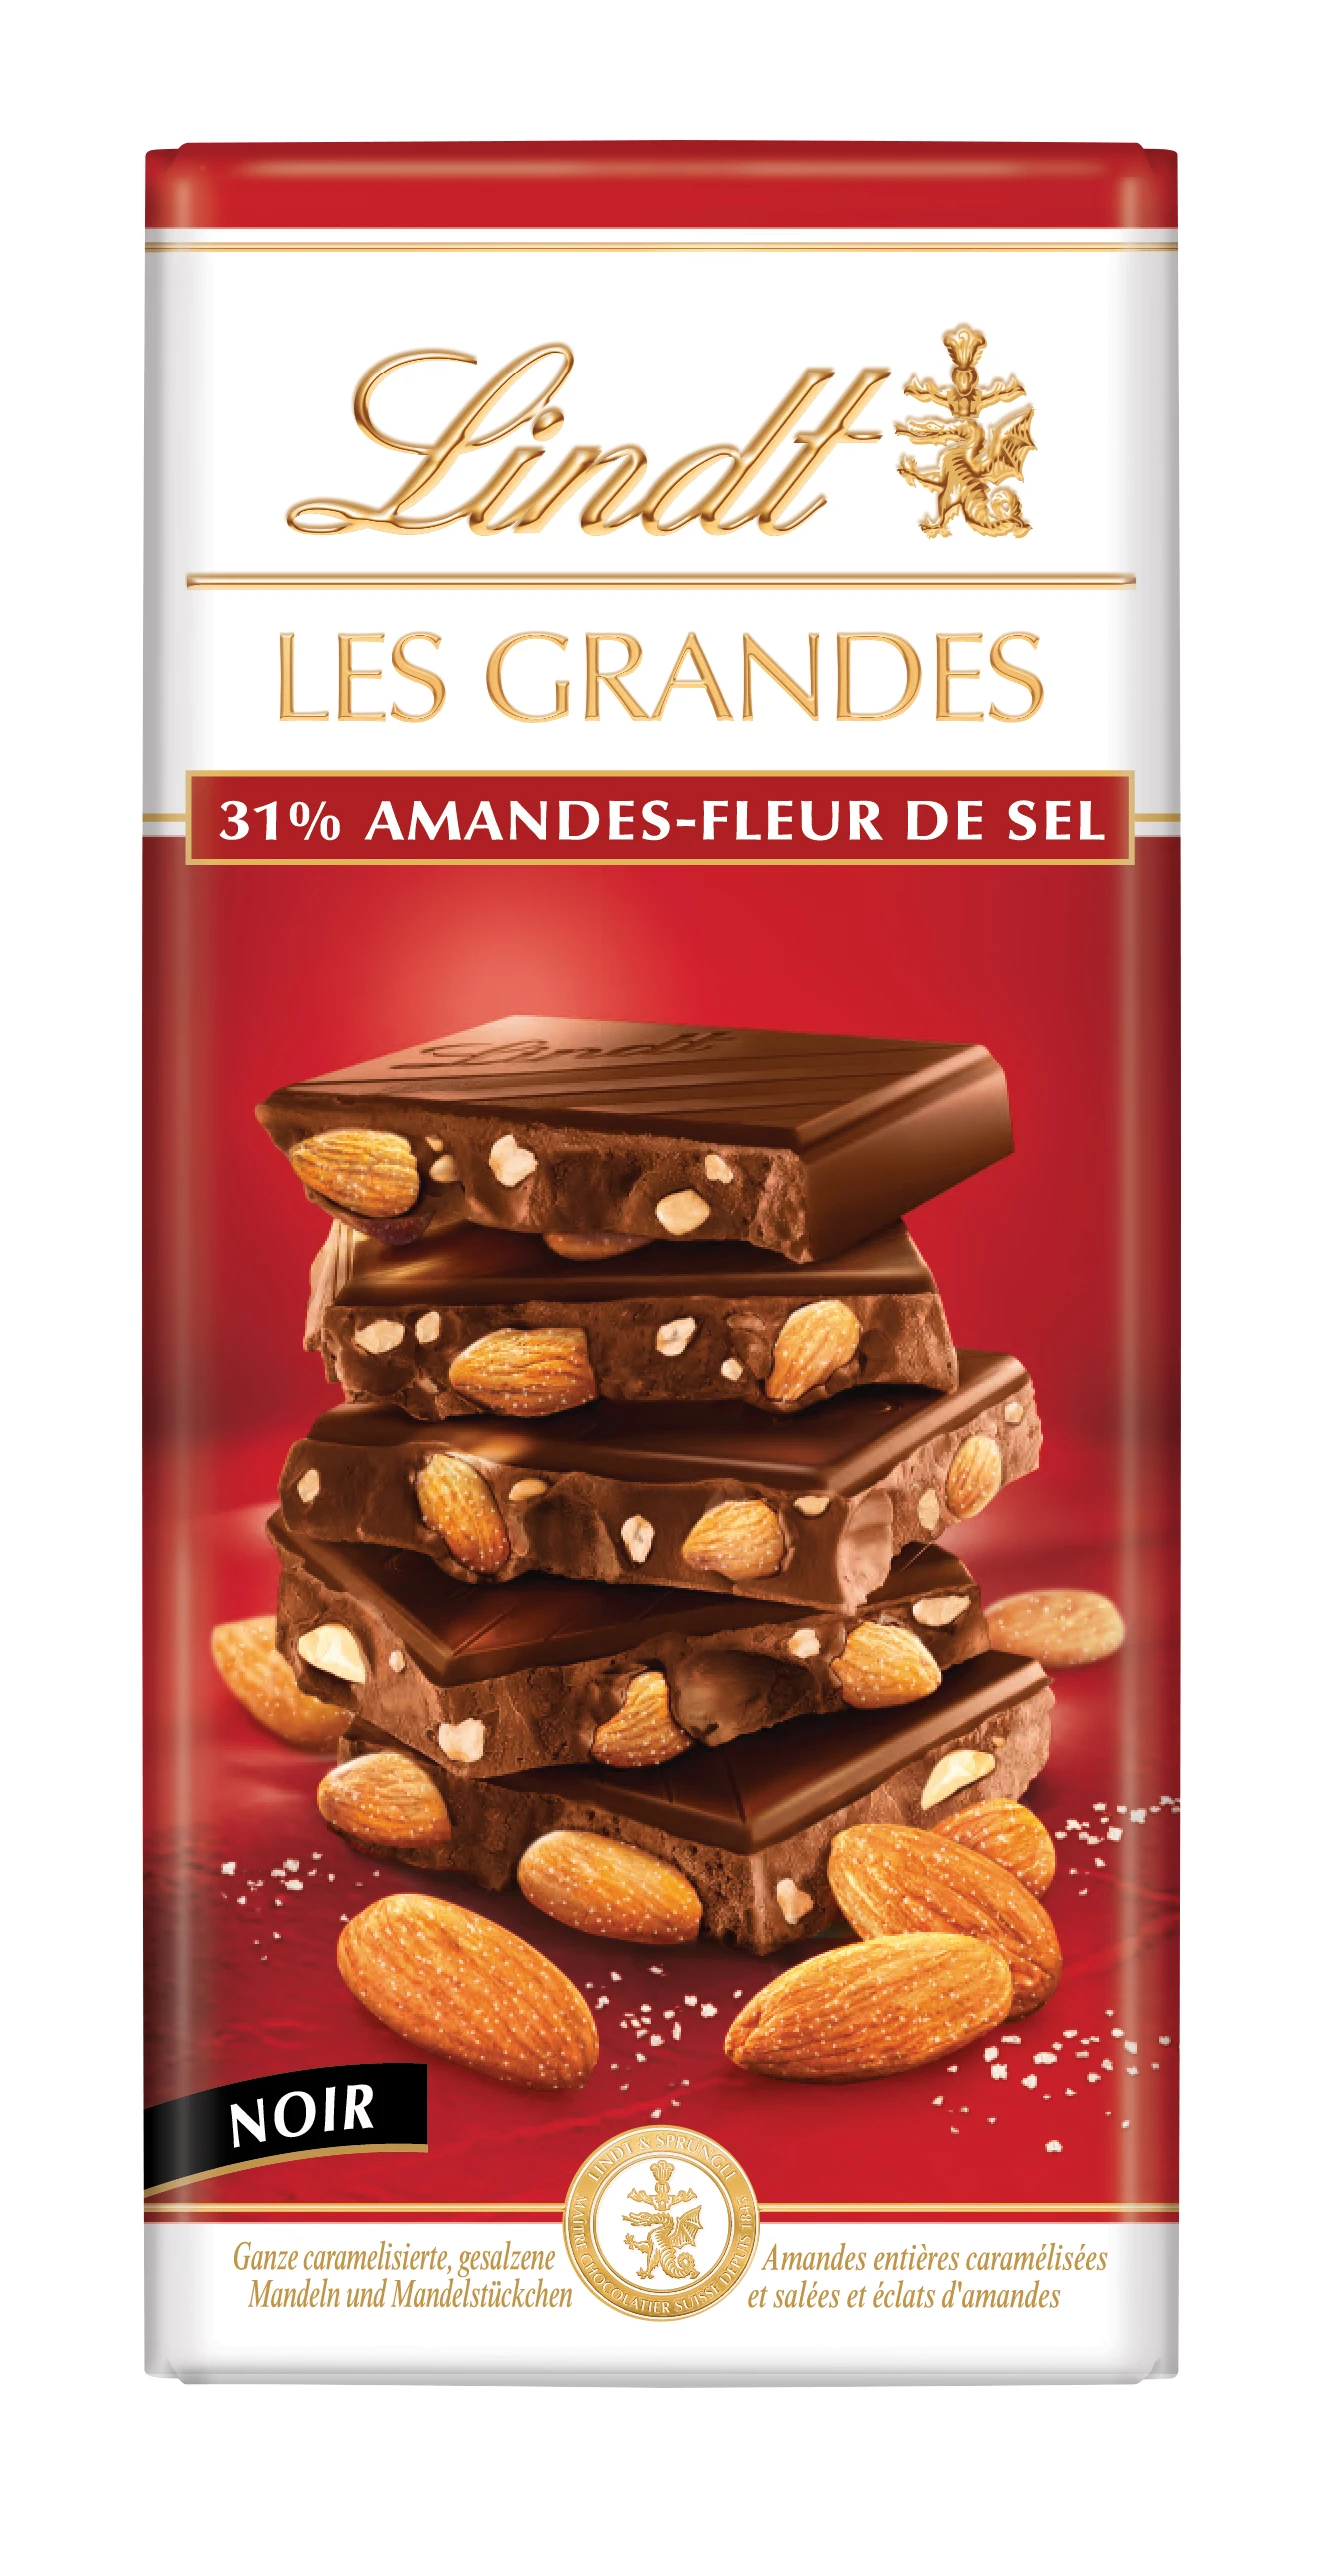 Les Grandes Noir Almonds-Fleur De Sel Tablet 150 G - LINDT